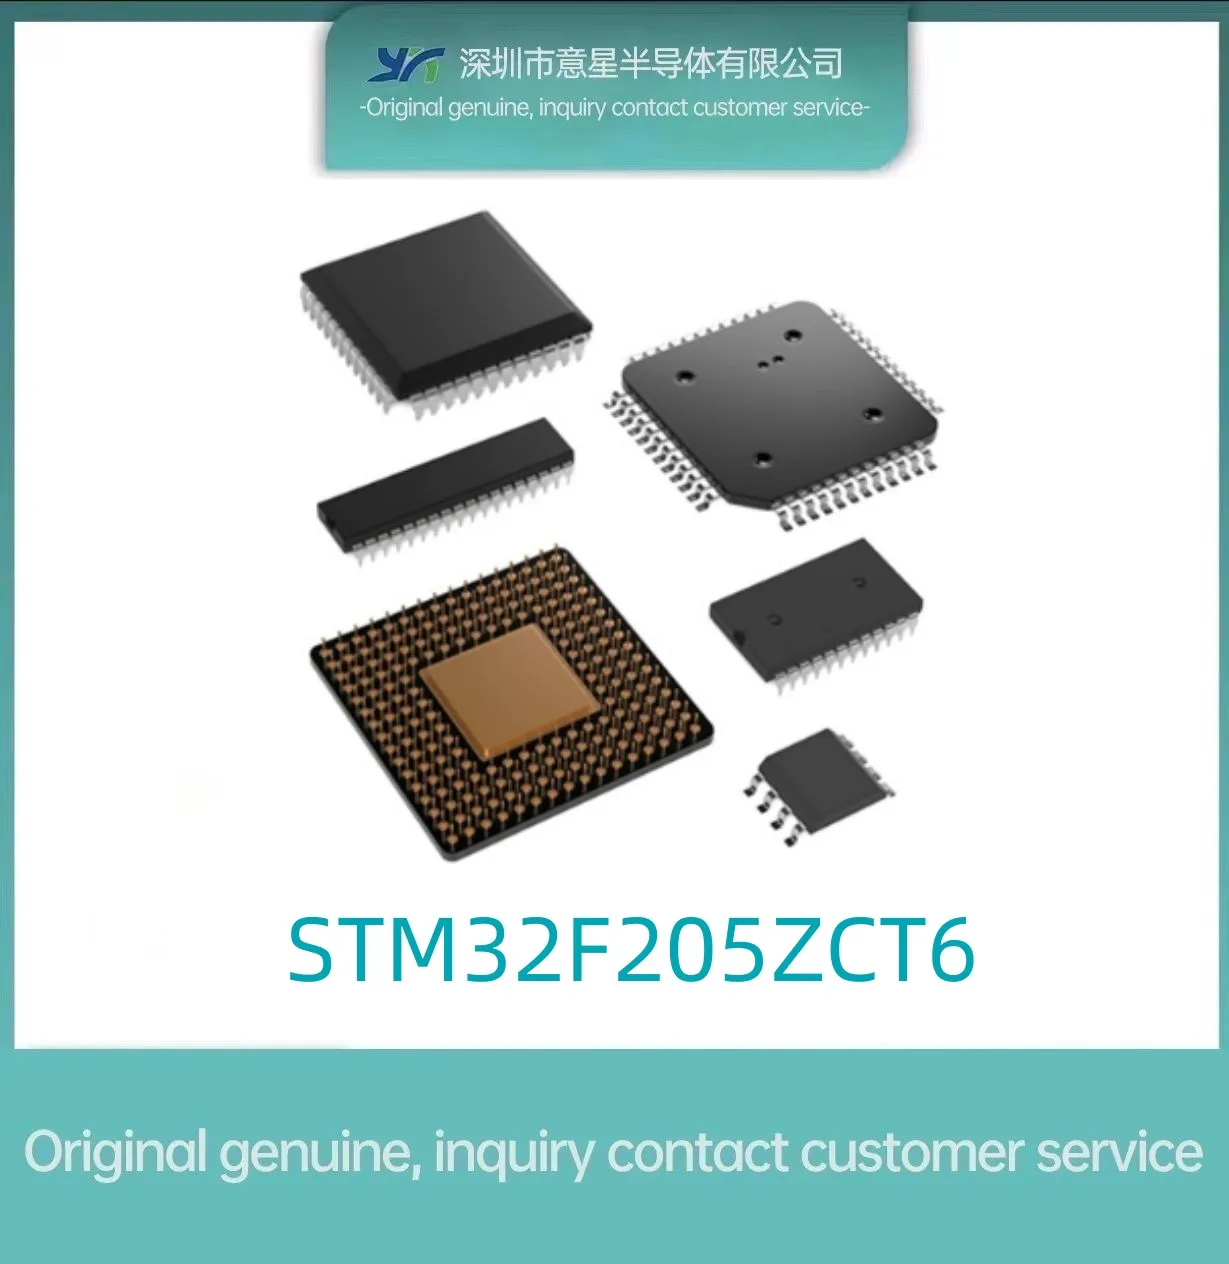 Съдържание на пакета STM32F205ZCT6, LQFP144, нов микроконтролер 205ZCT6, оригинални автентични